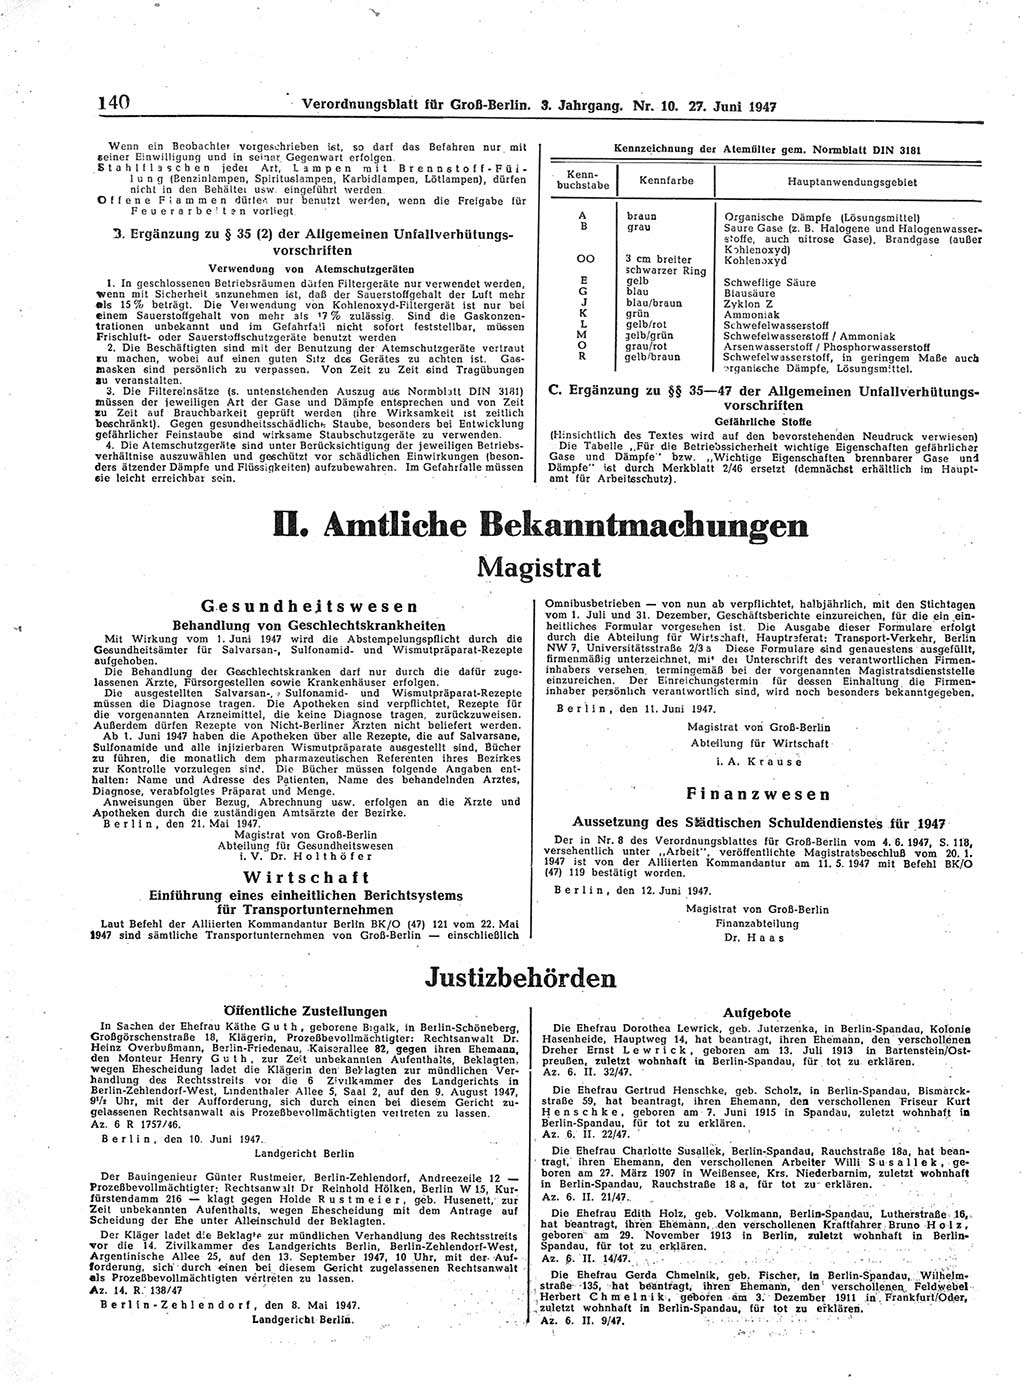 Verordnungsblatt (VOBl.) für Groß-Berlin 1947, Seite 140 (VOBl. Bln. 1947, S. 140)